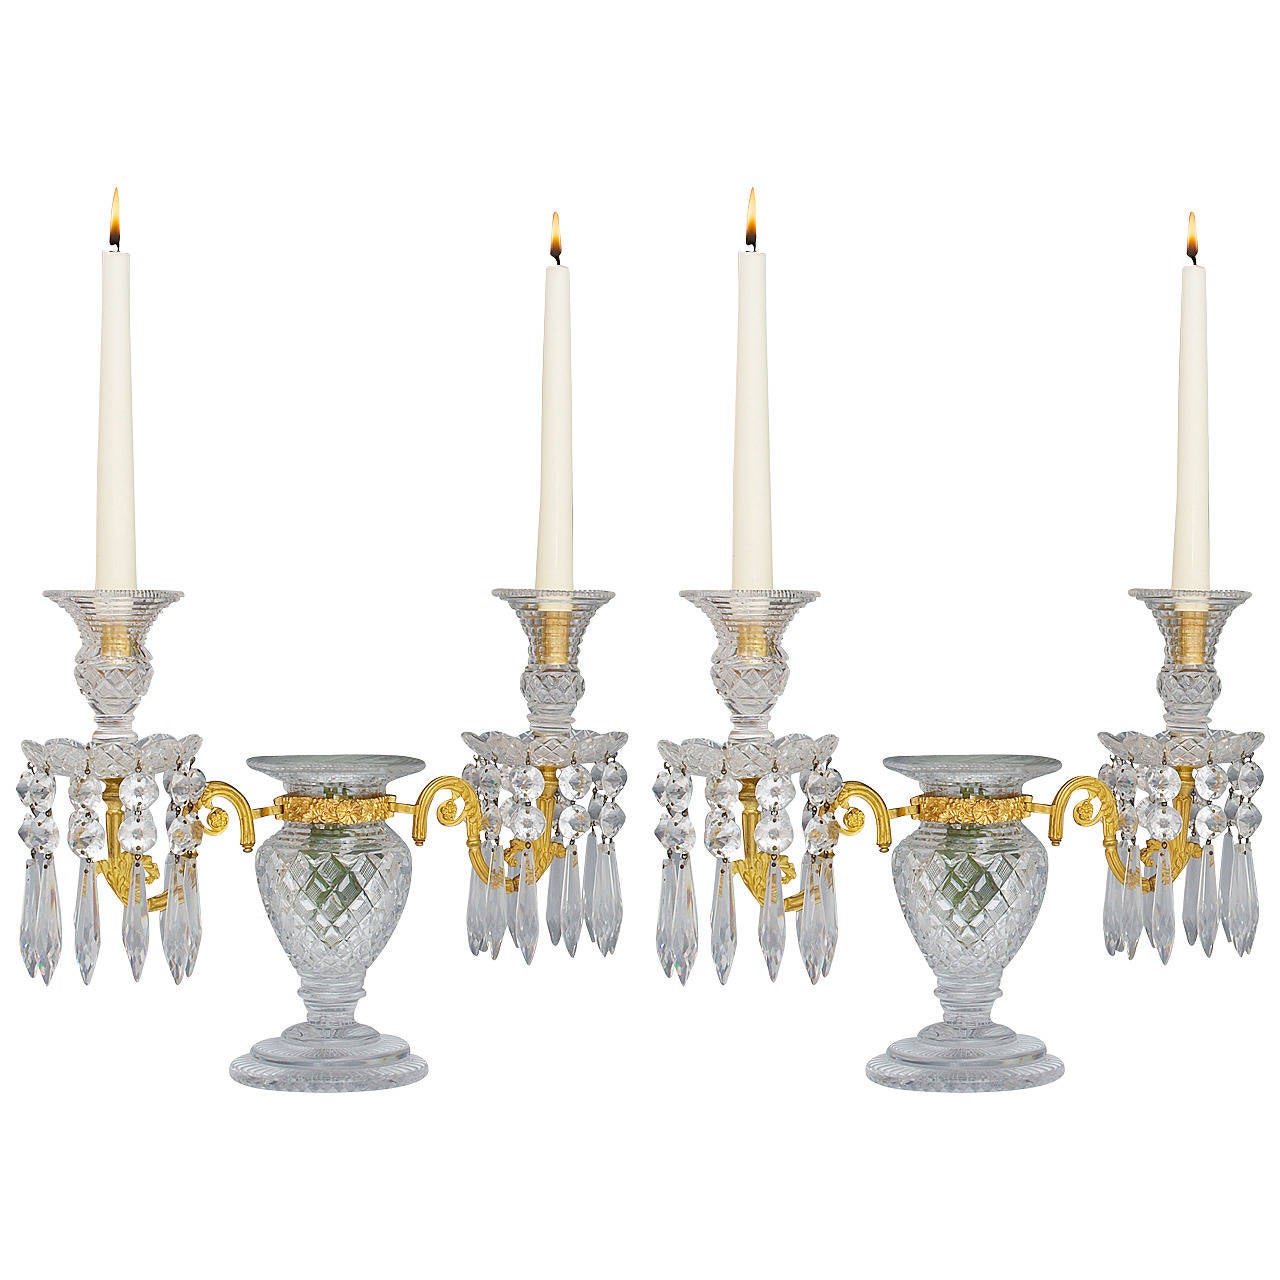 Paire inhabituelle de candélabres en verre taillé de style Regency montés sur bronze doré